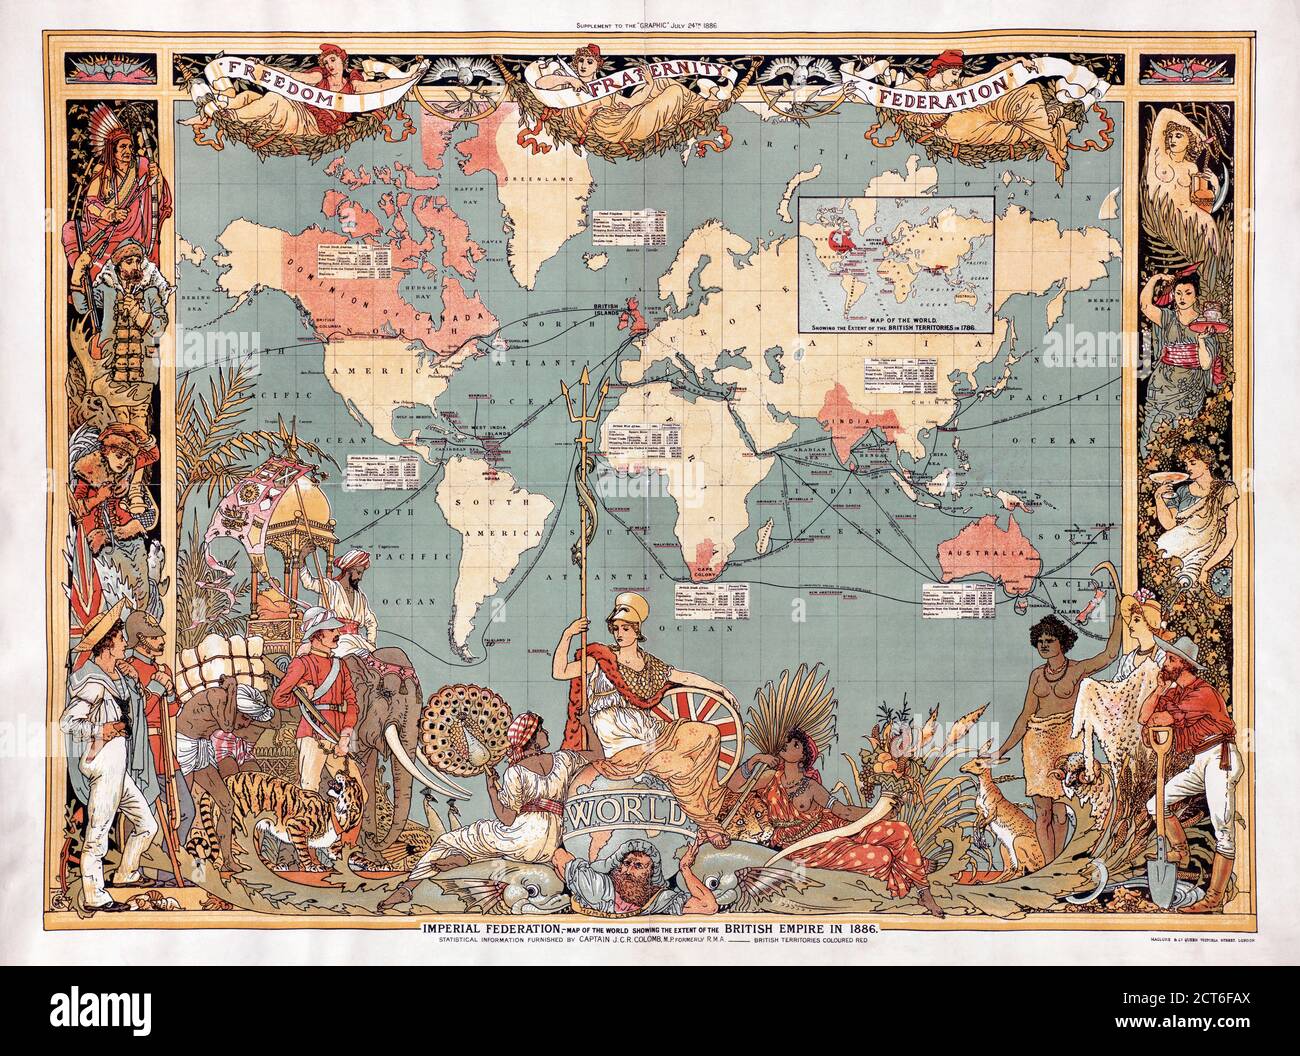 Carte du monde montrant l'étendue de l'Empire britannique en 1886. Les territoires de l’Empire sont marqués en rouge. La carte a été incluse en supplément dans l'édition du 24 juillet 1886 du journal britannique illustré The Graphic. Banque D'Images